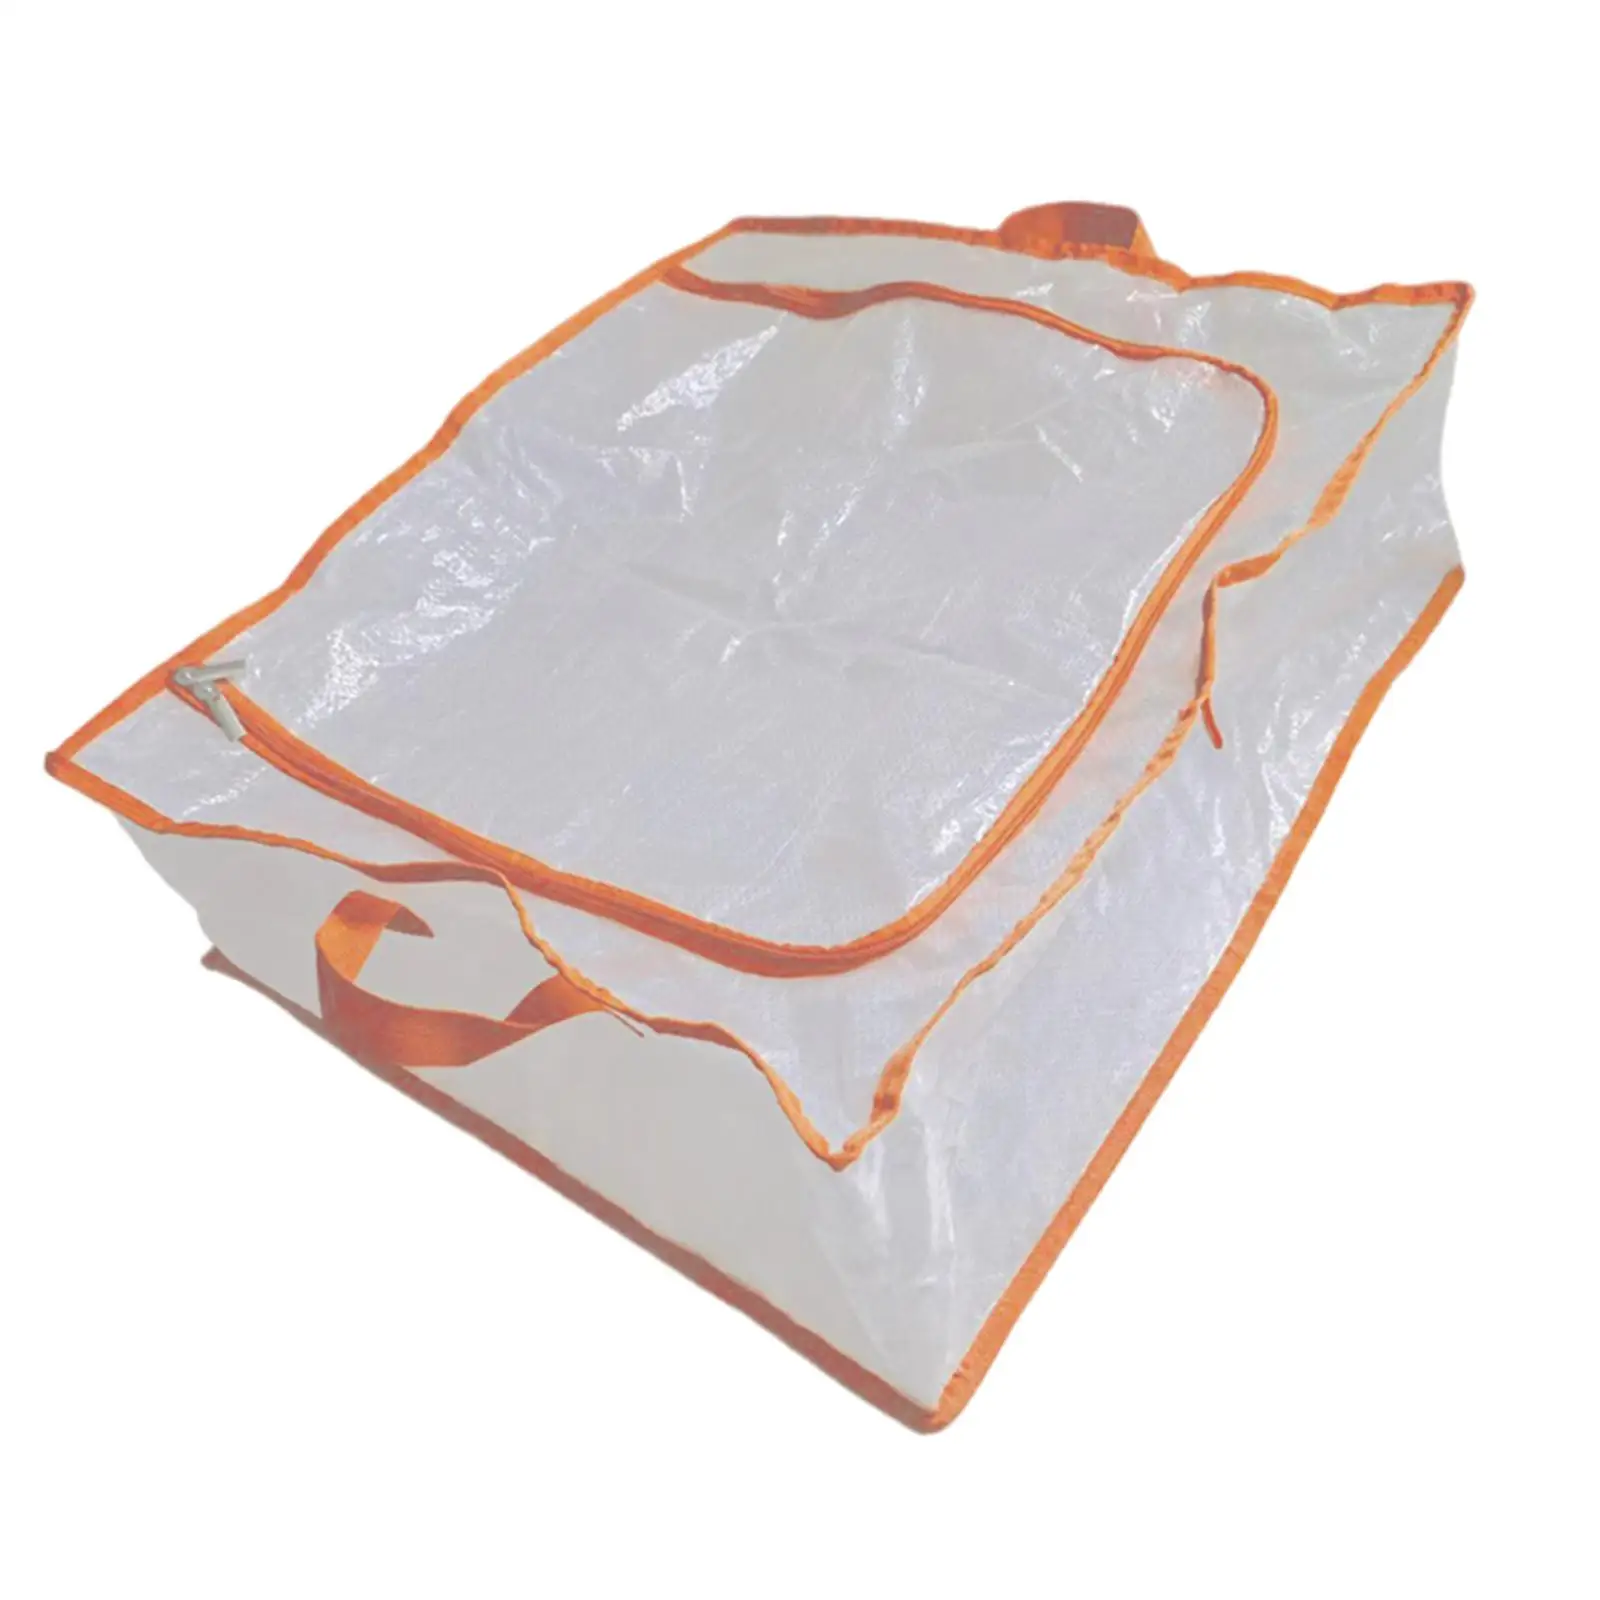 Clothes Storage Bag PP Multipurpose under Bed Storage Bins for College Dorm Comforter Bedding Transporting Organizing Blanket